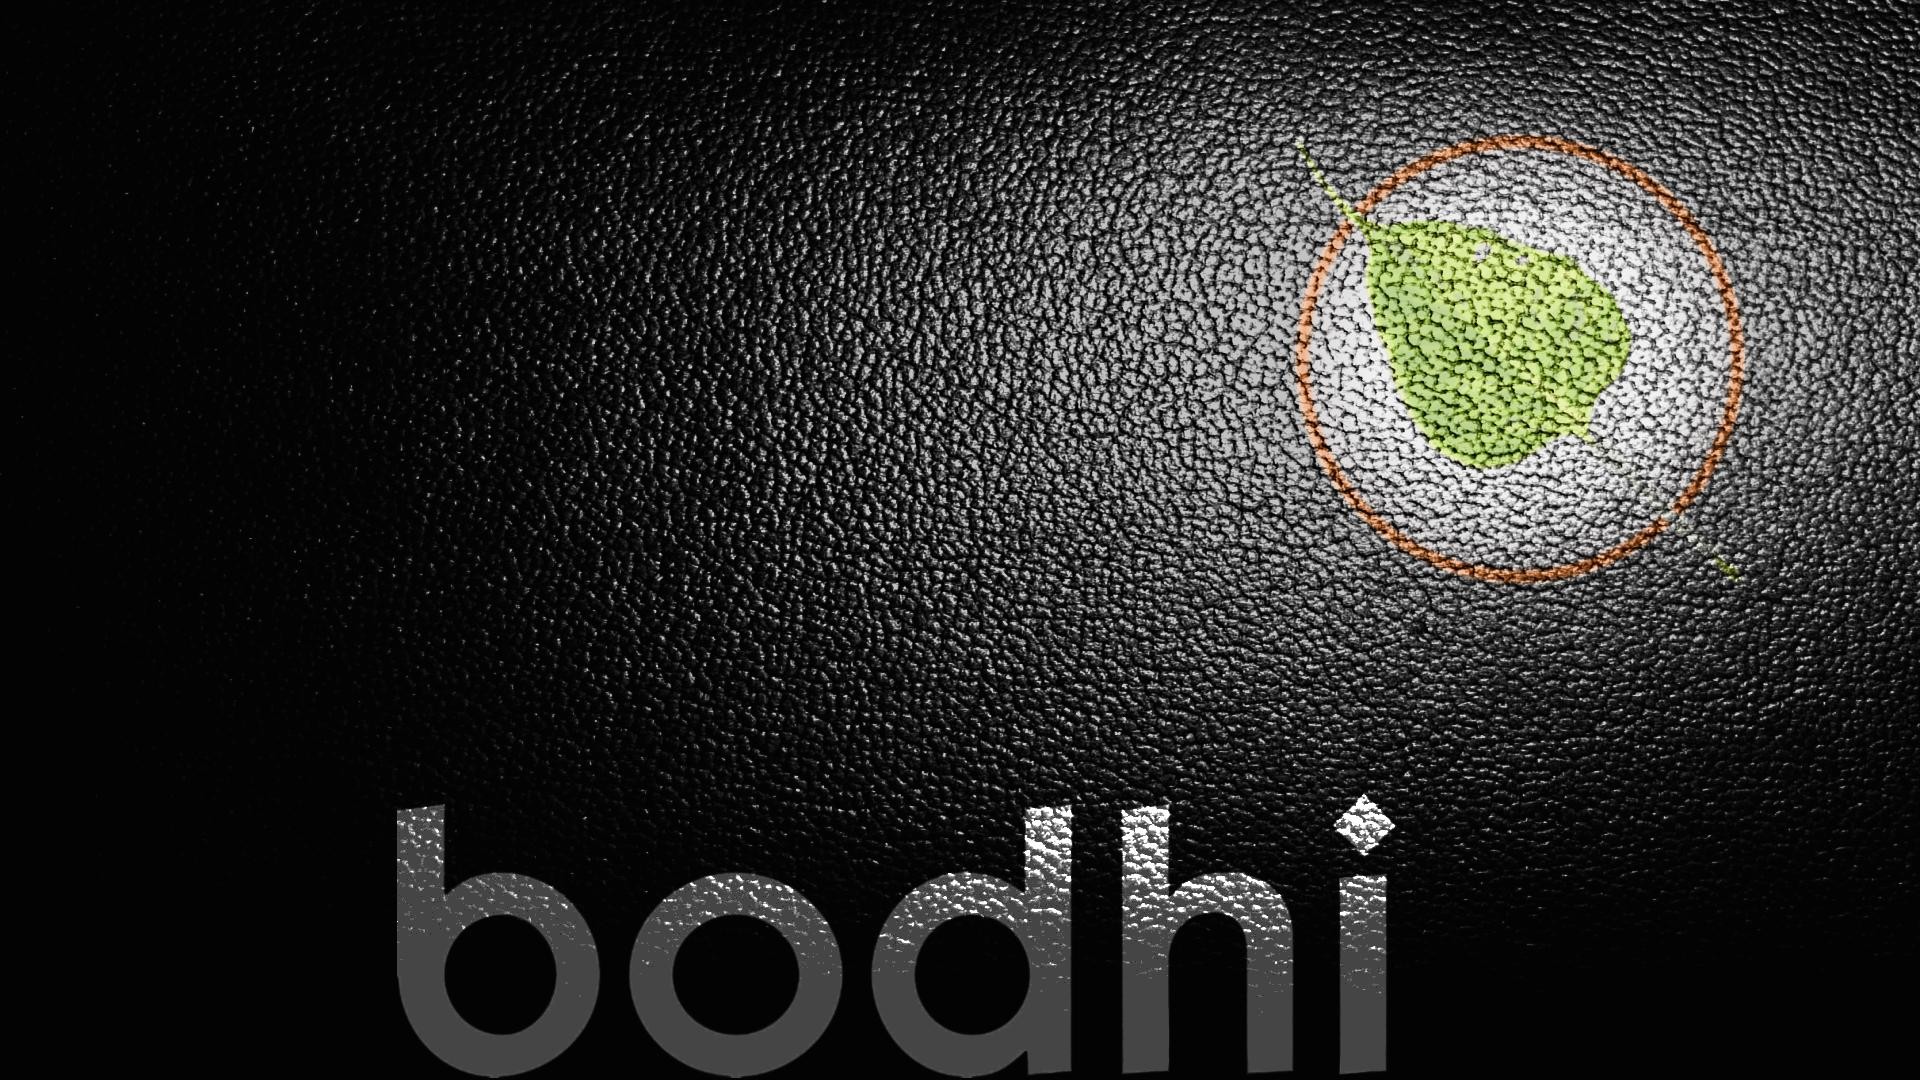 text, Linux, textures, Bodhi Linux - desktop wallpaper